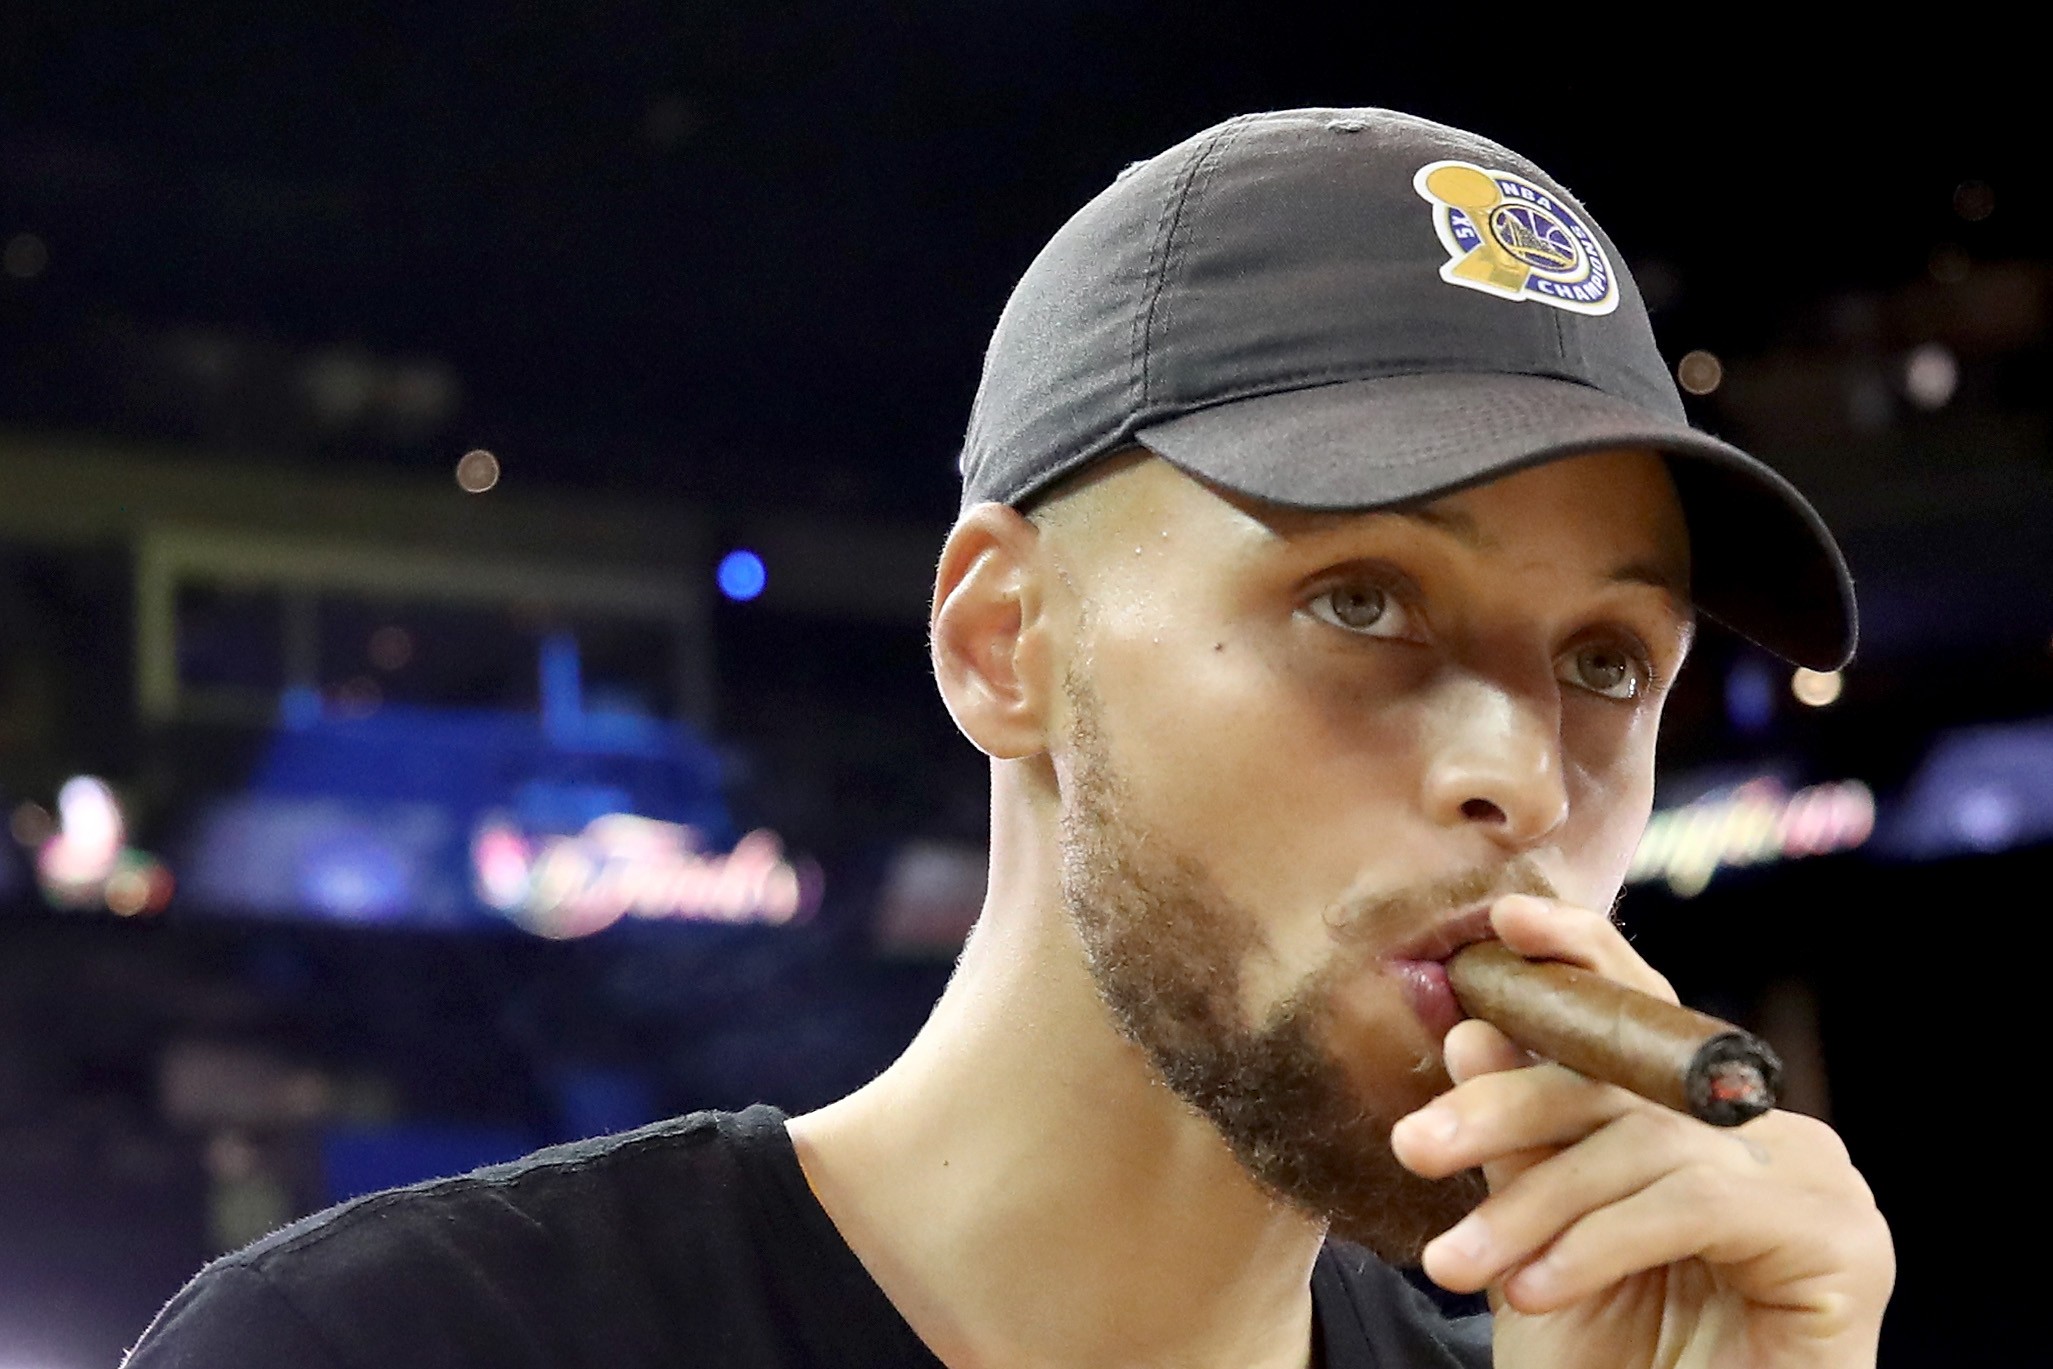 Stephen Curry encabeça lista de mais bem pagos da NBA nesta temporada